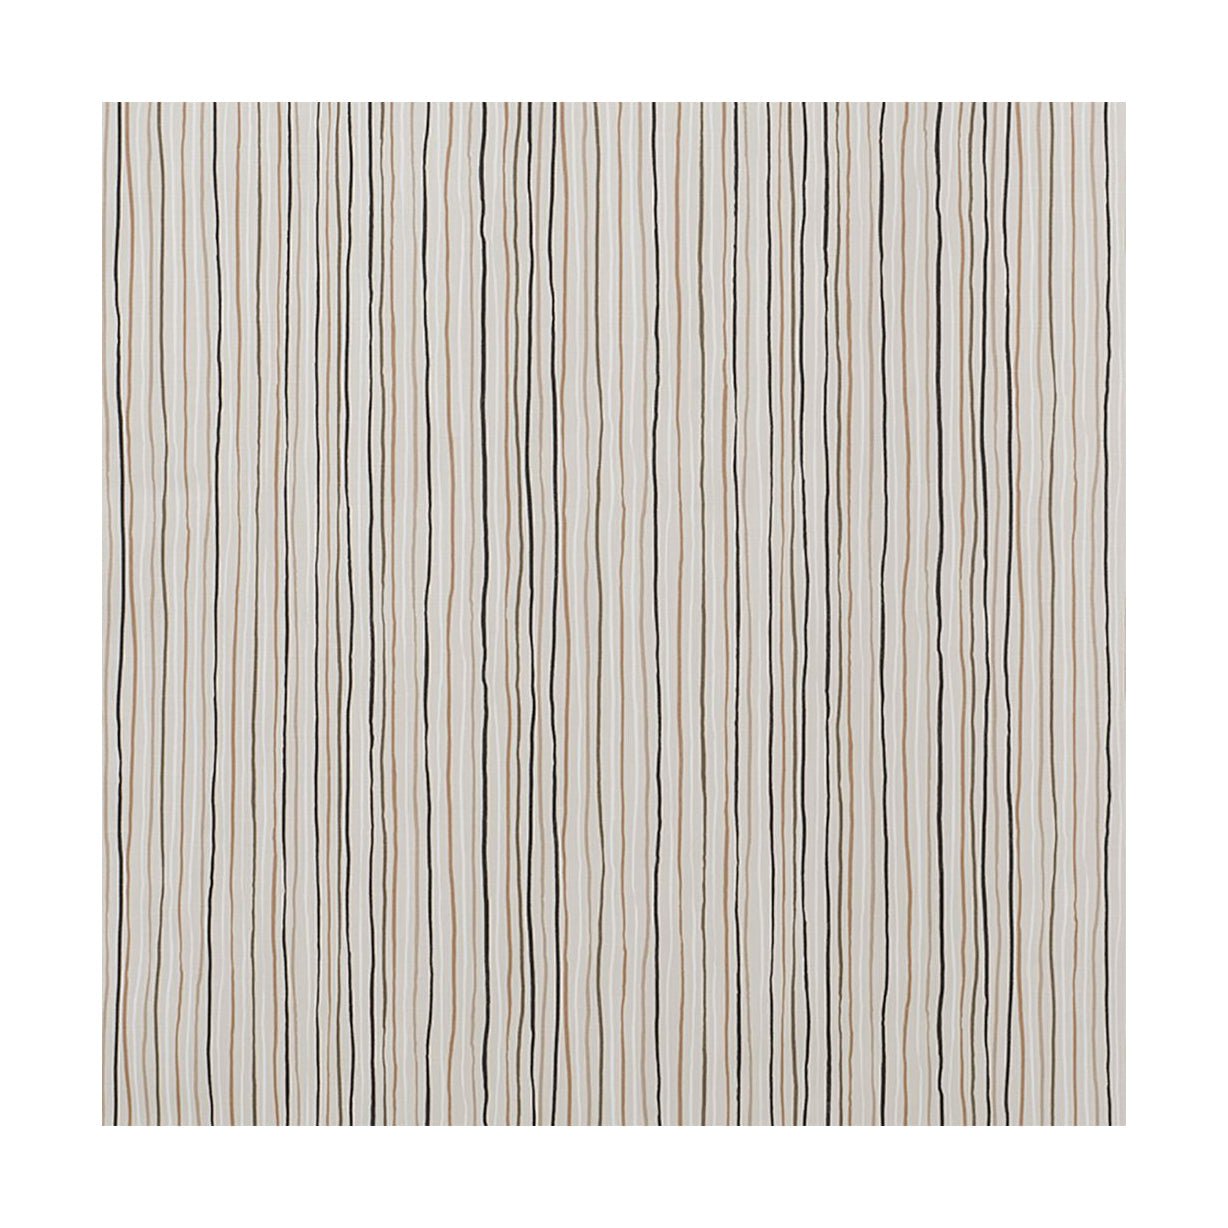 Larghezza del tessuto Spira Stripe 150 cm (prezzo per metro), multi naturale